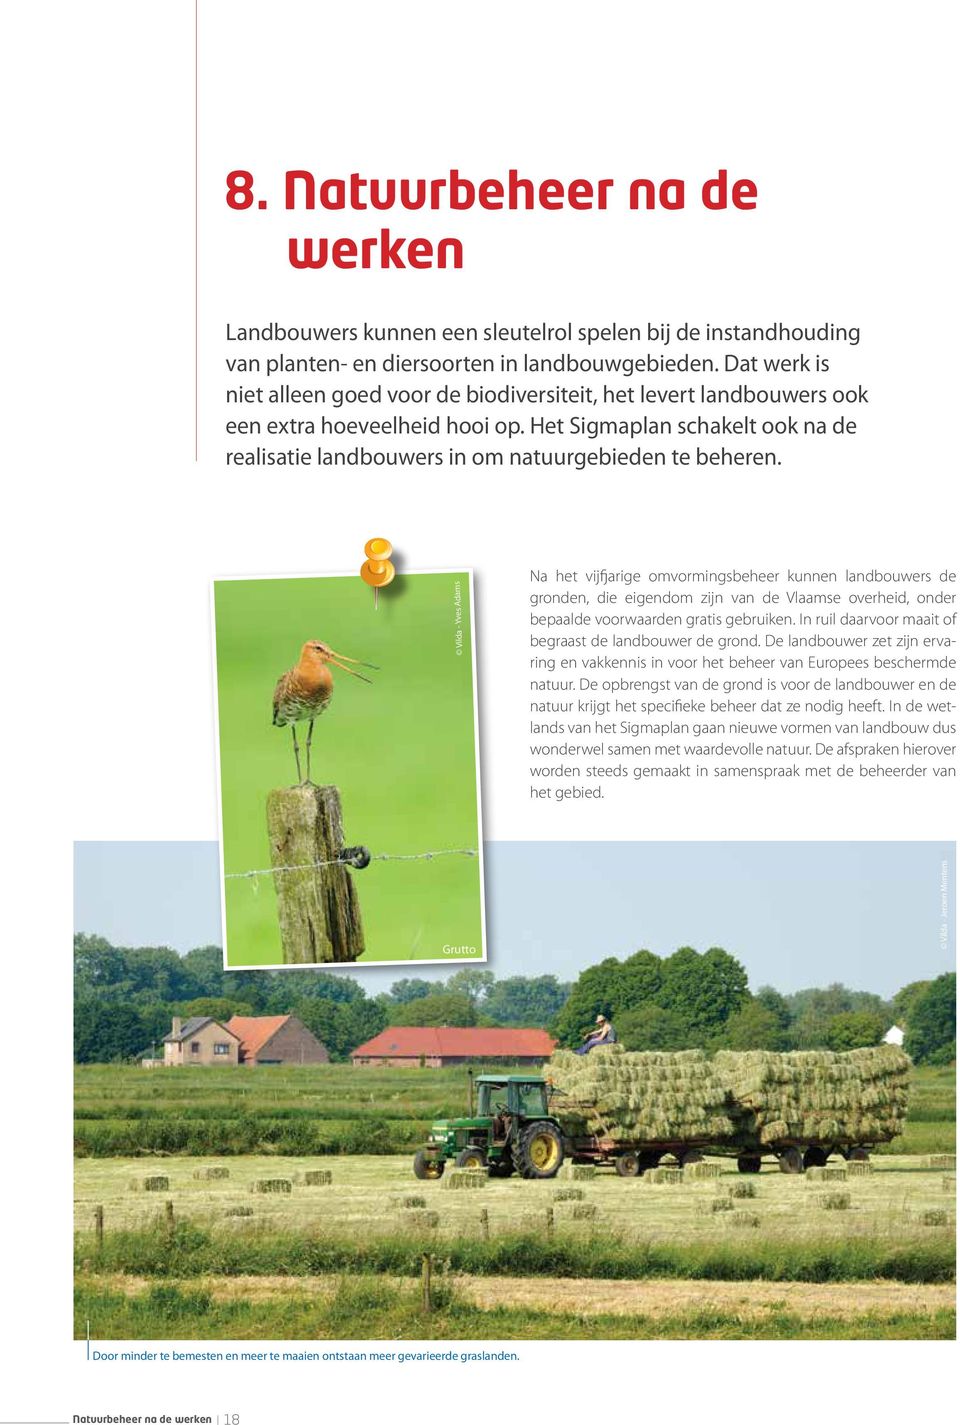 Vilda - Yves Adams Na het vijfjarige omvormingsbeheer kunnen landbouwers de gronden, die eigendom zijn van de Vlaamse overheid, onder bepaalde voorwaarden gratis gebruiken.